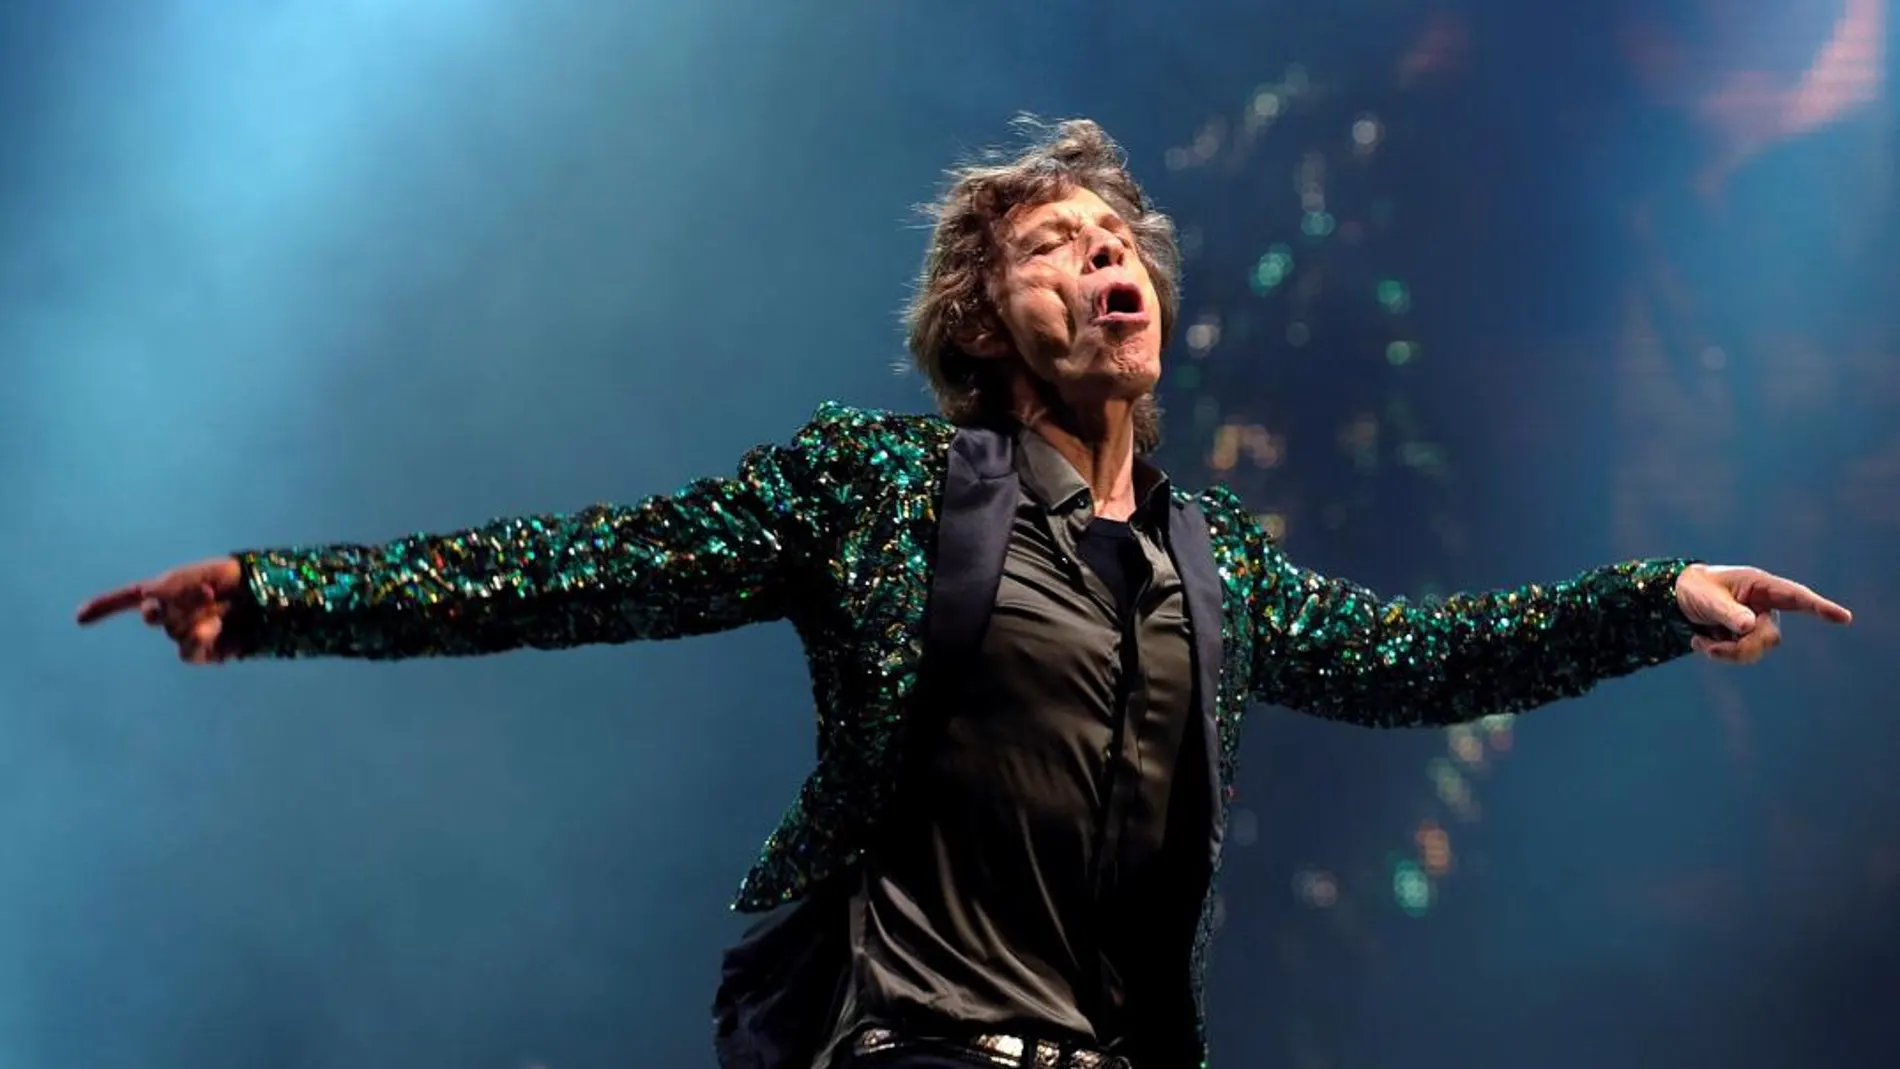 Fotografía de archivo del 29 de junio del 2013 que muestra al líder de The Rolling Stones, el británico Mick Jagger, mientras actúa sobre el escenario en el festival de Glastonbury 2013 en el Reino Unido. Foto: EFE/ Facundo Arrizabalaga